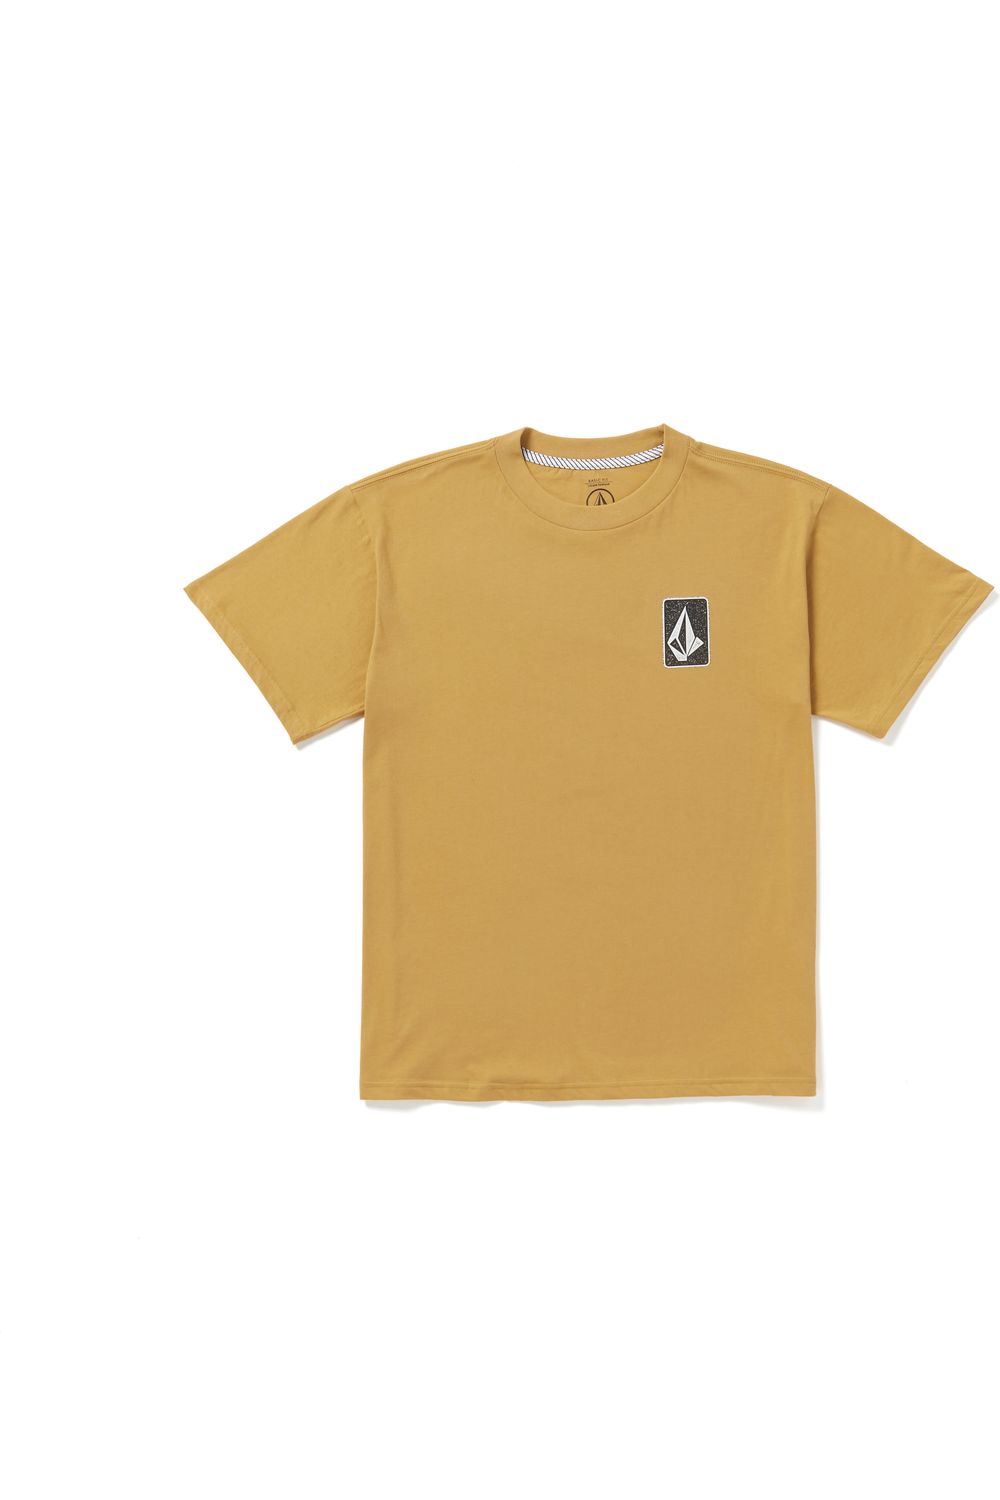 Volcom Skate Vitals Originator Short Sleeve T-Shirt Mustard